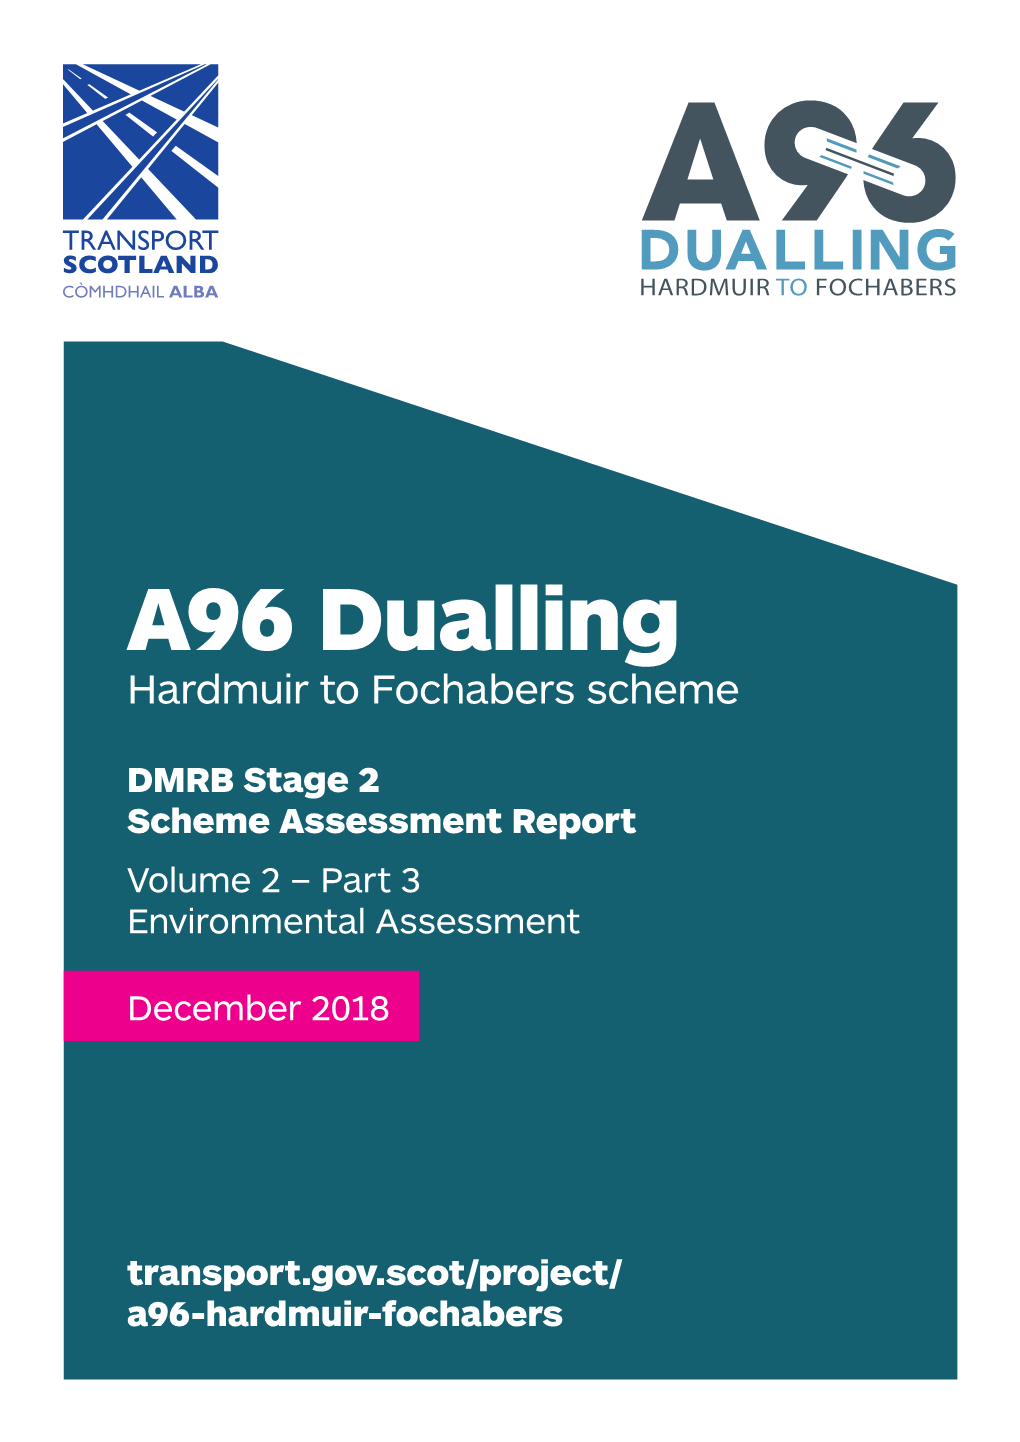 A96 Dualling Hardmuir to Fochabers Scheme